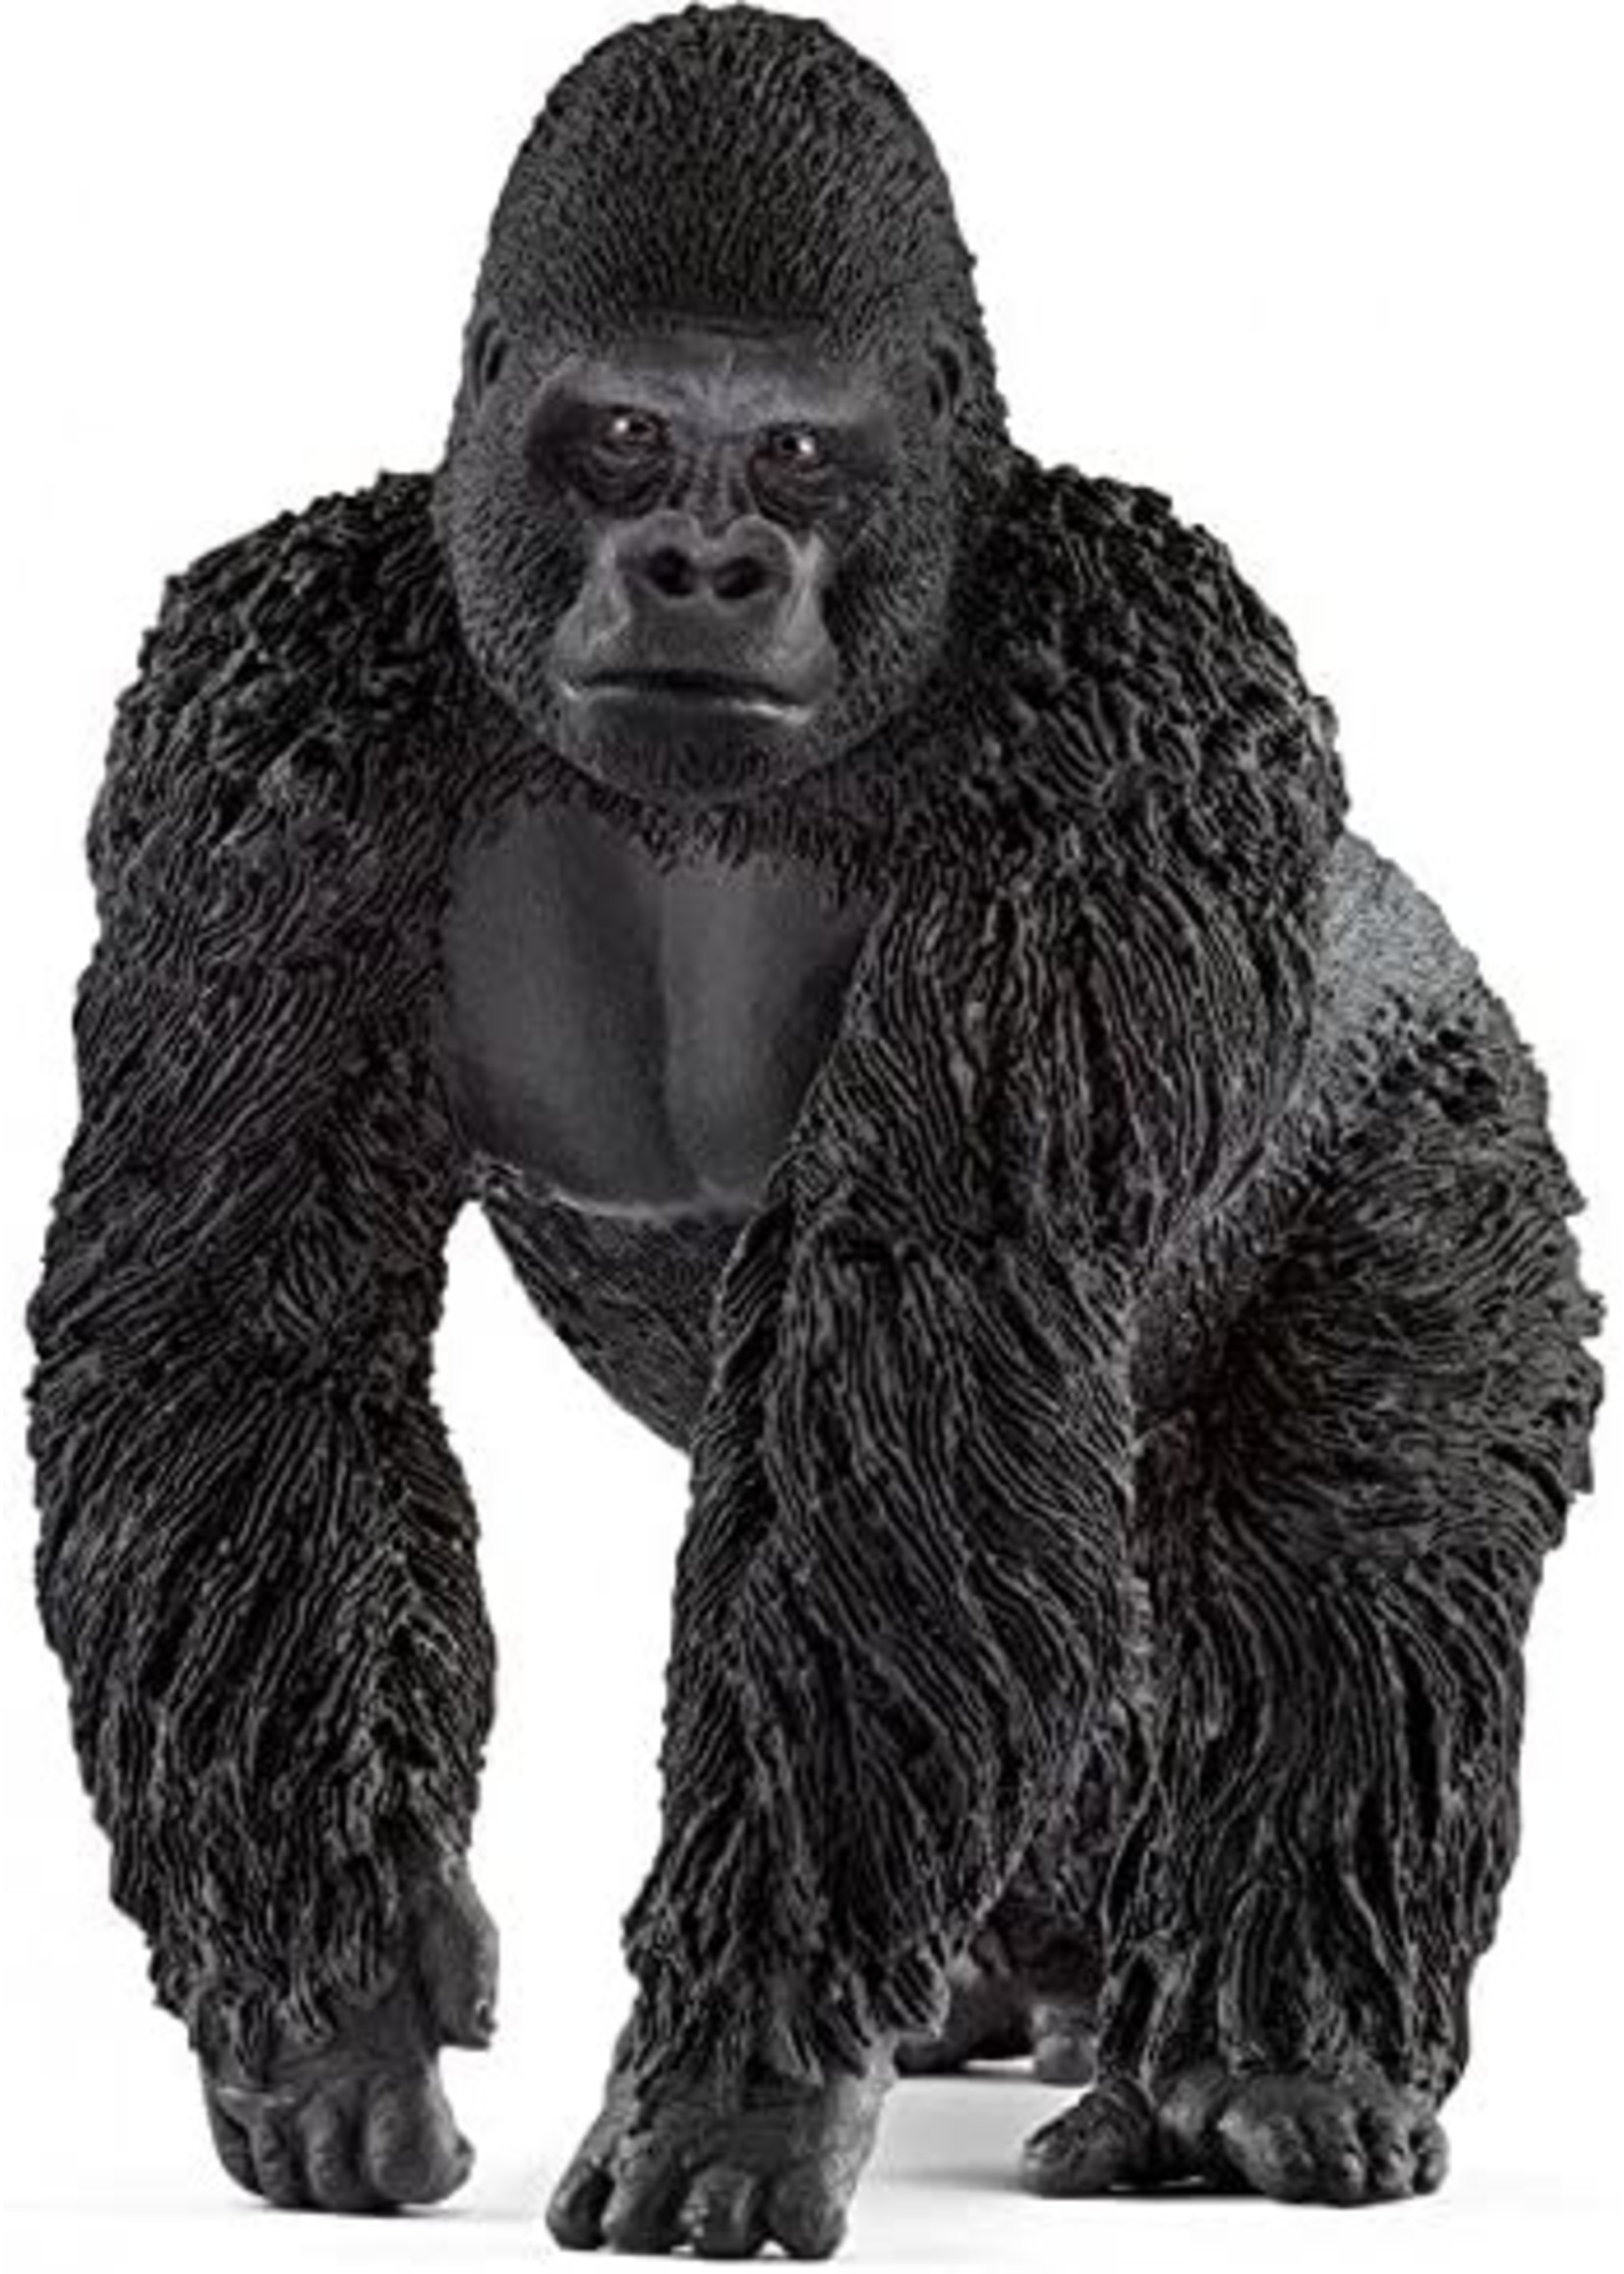 Schleich 14770 - Gorilla, Male